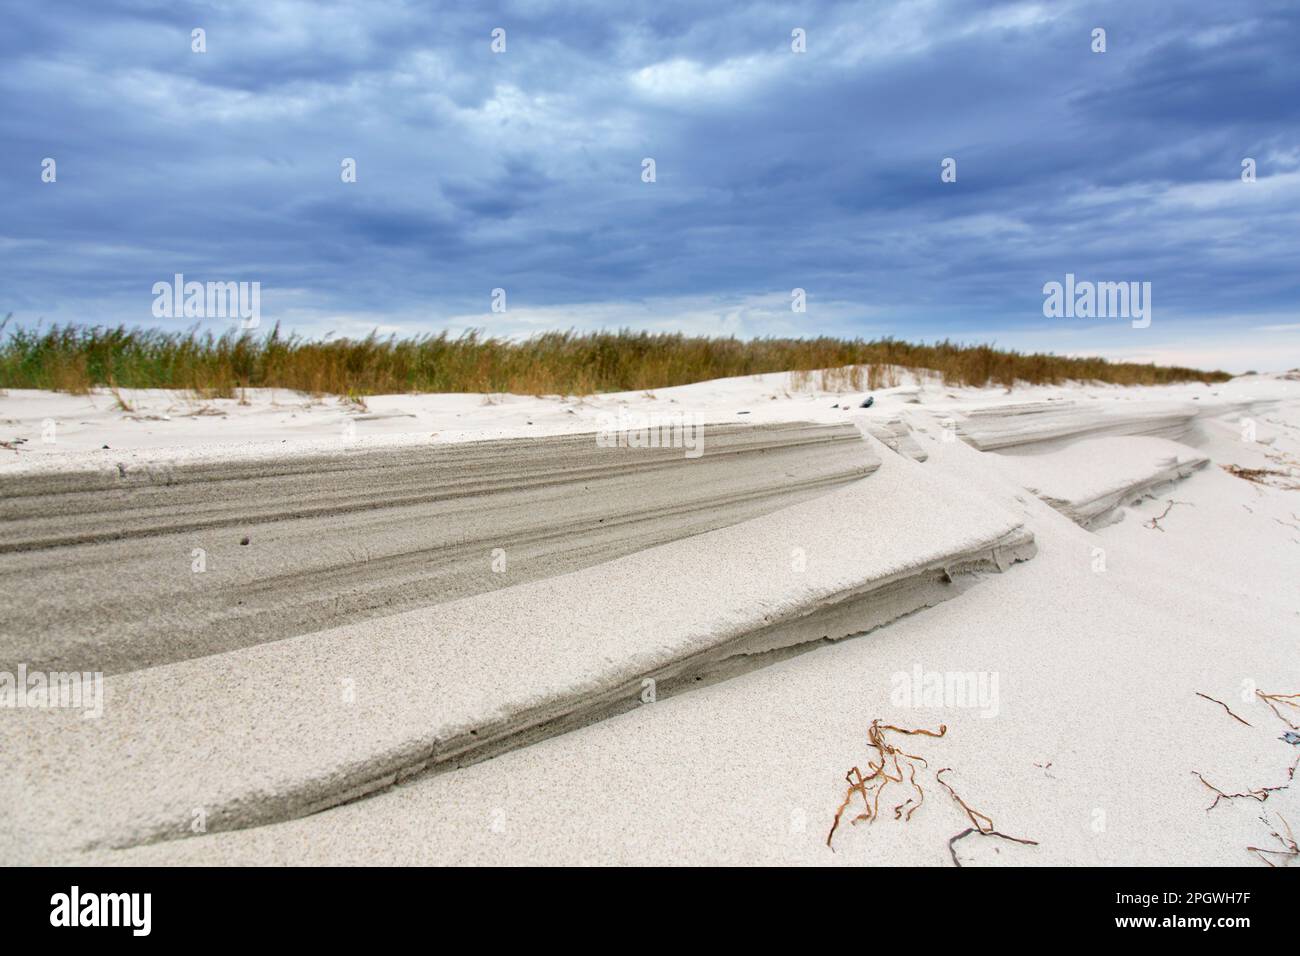 Plage de sable et dune de sable le long de la mer Baltique au parc national de la région de la lagune de Poméranie occidentale, Mecklembourg-Poméranie-Occidentale, Allemagne Banque D'Images